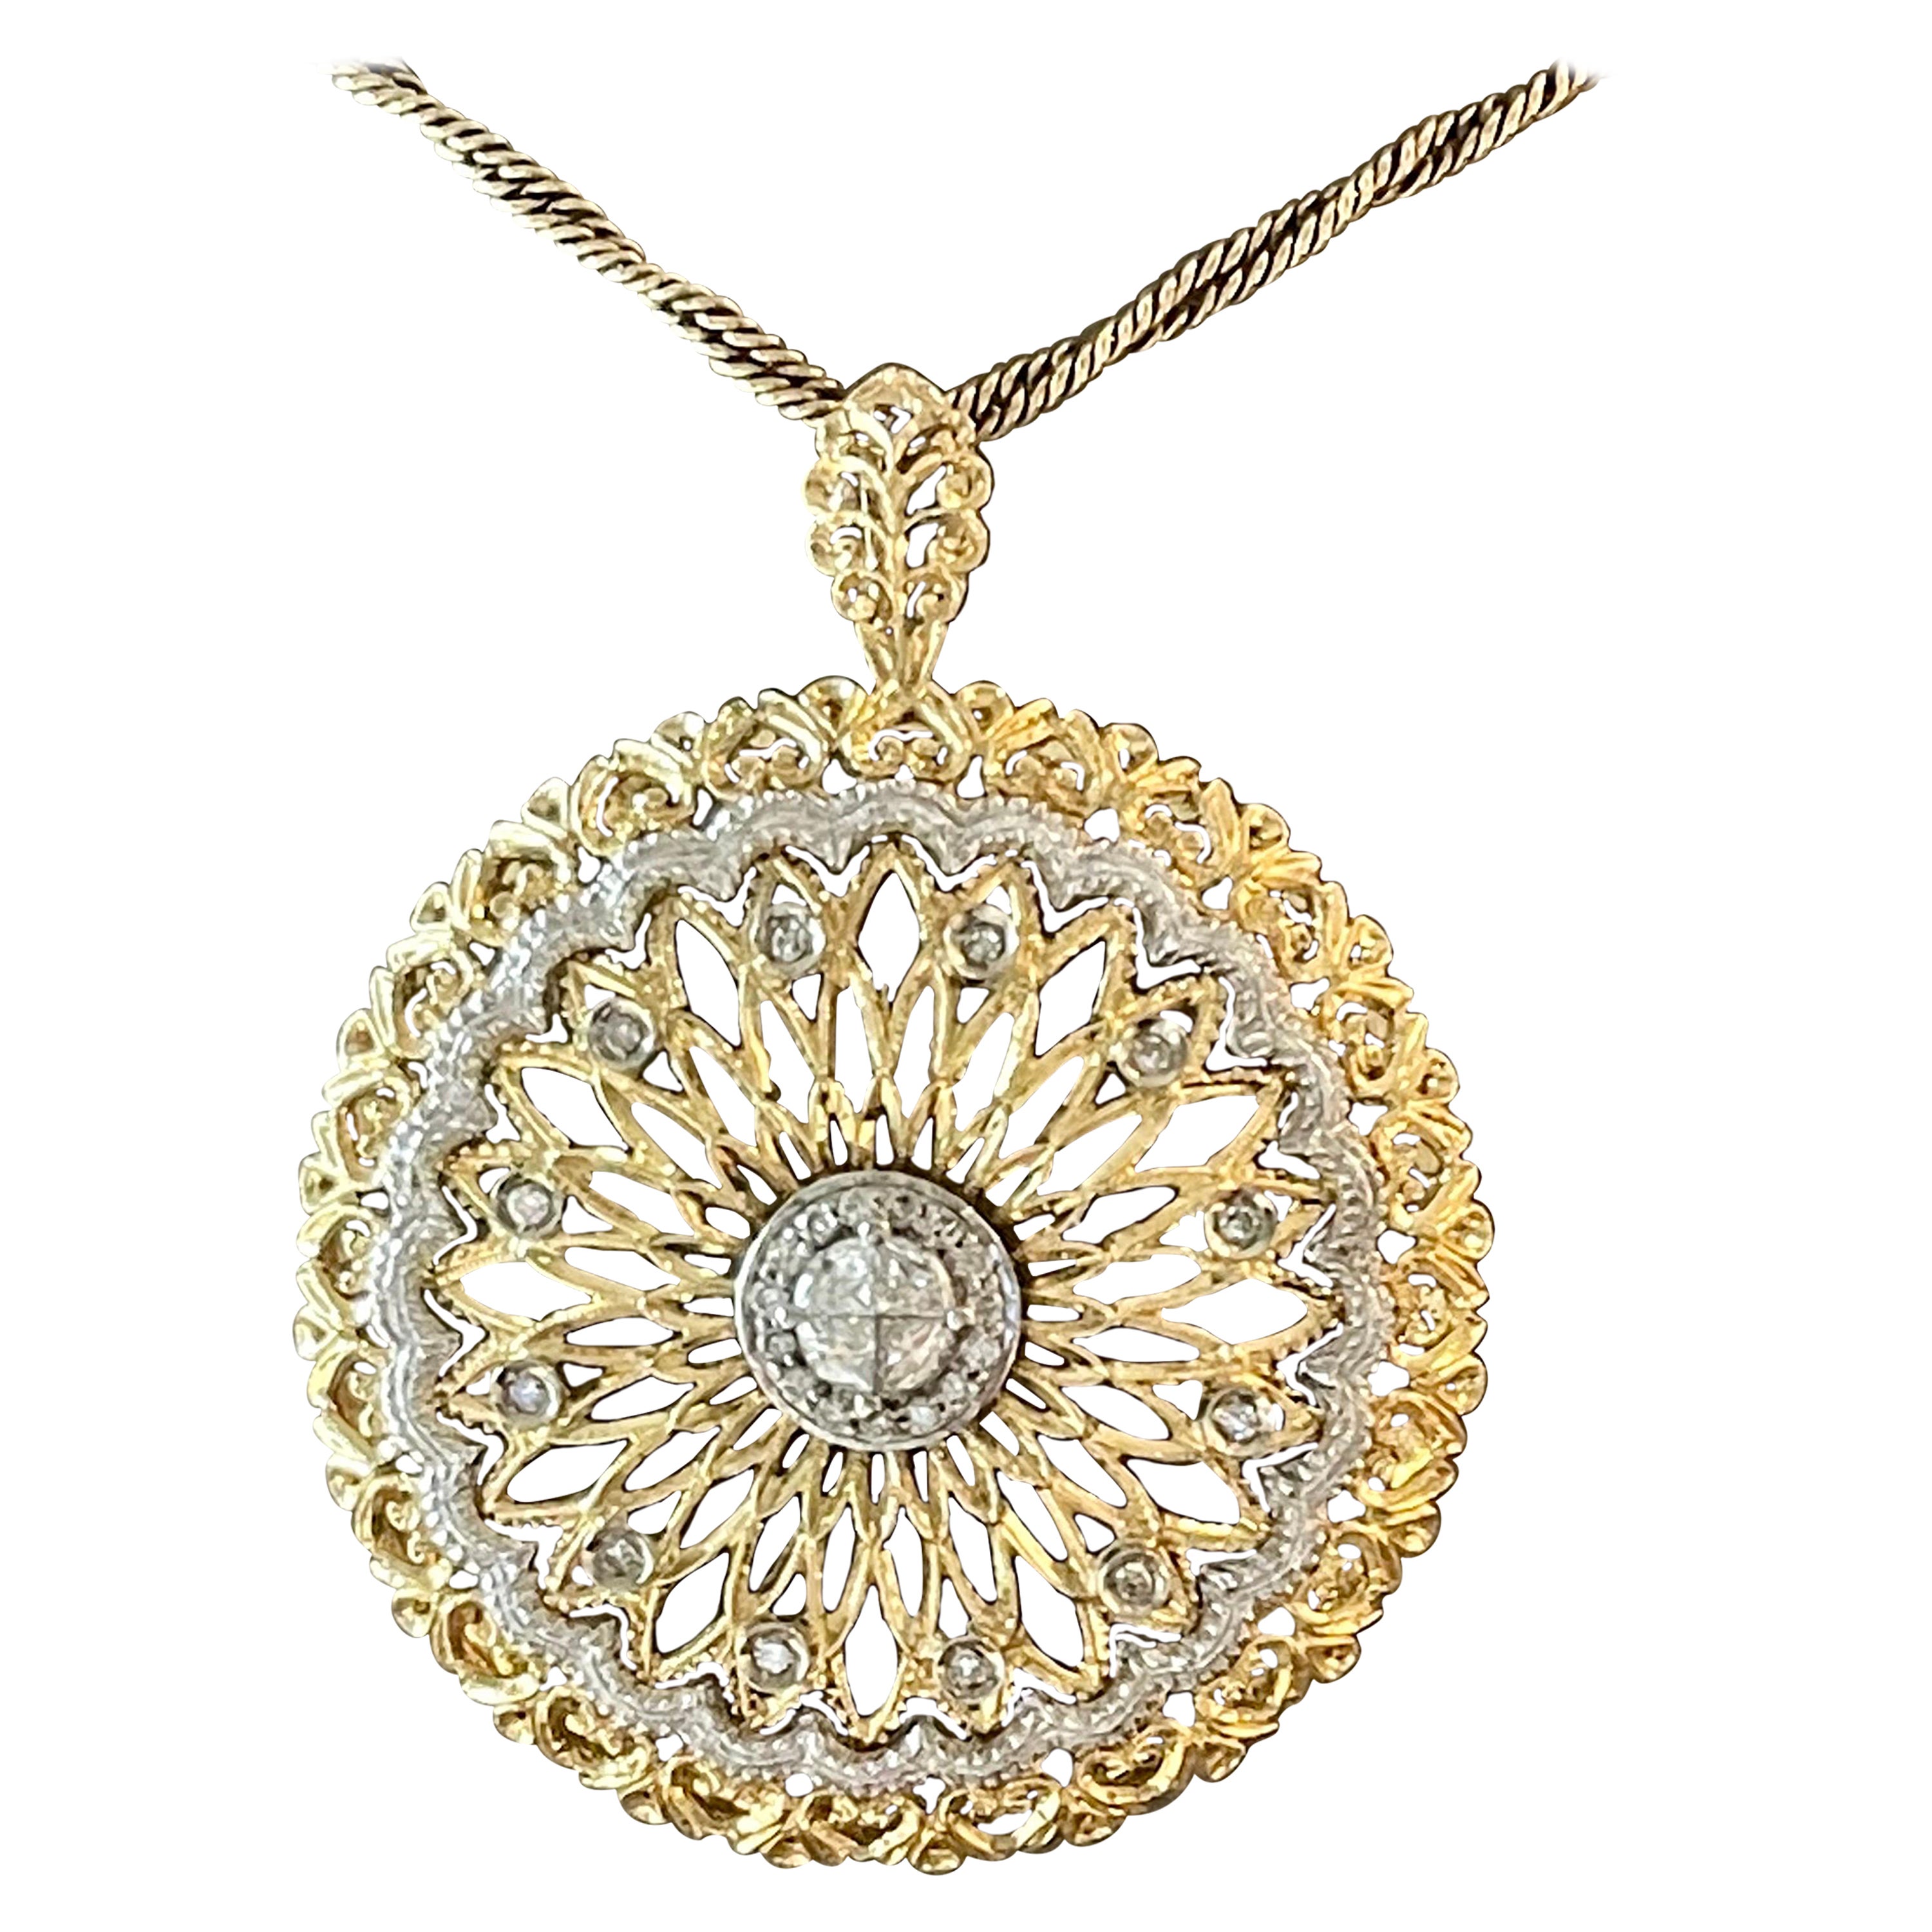 Vintage 8 K Yellow White Gold Diamond Pendant with Chain